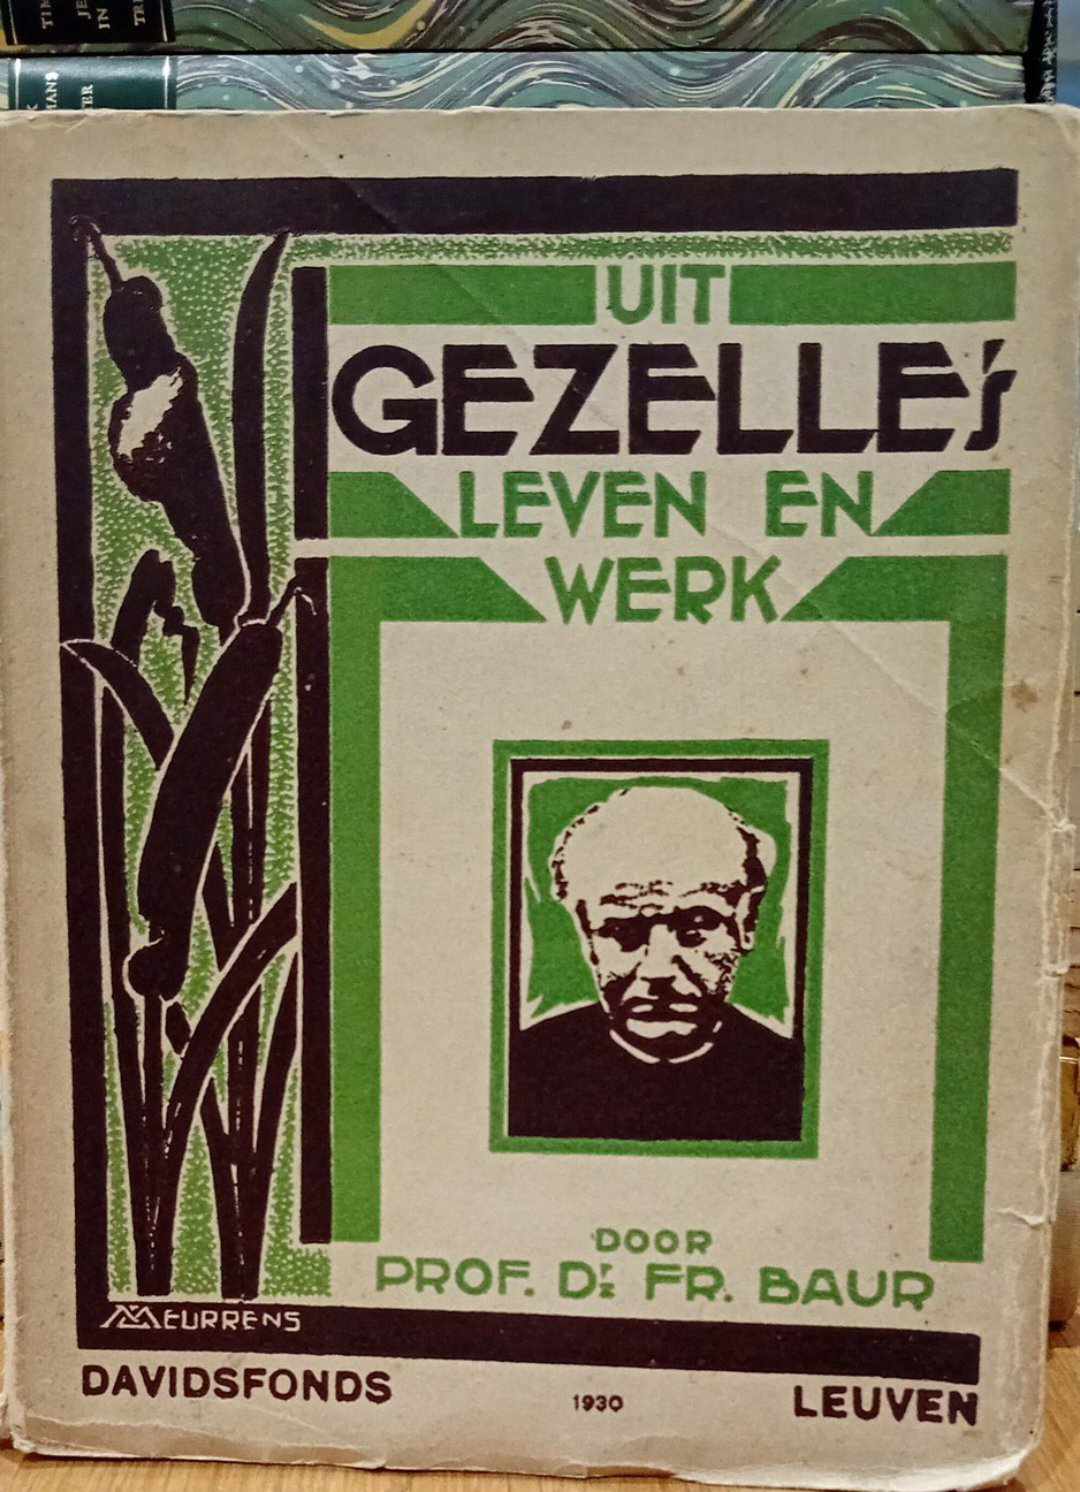 Guido Gezelle uit zijn leven en werk - uitgave 1930 - 230 blz